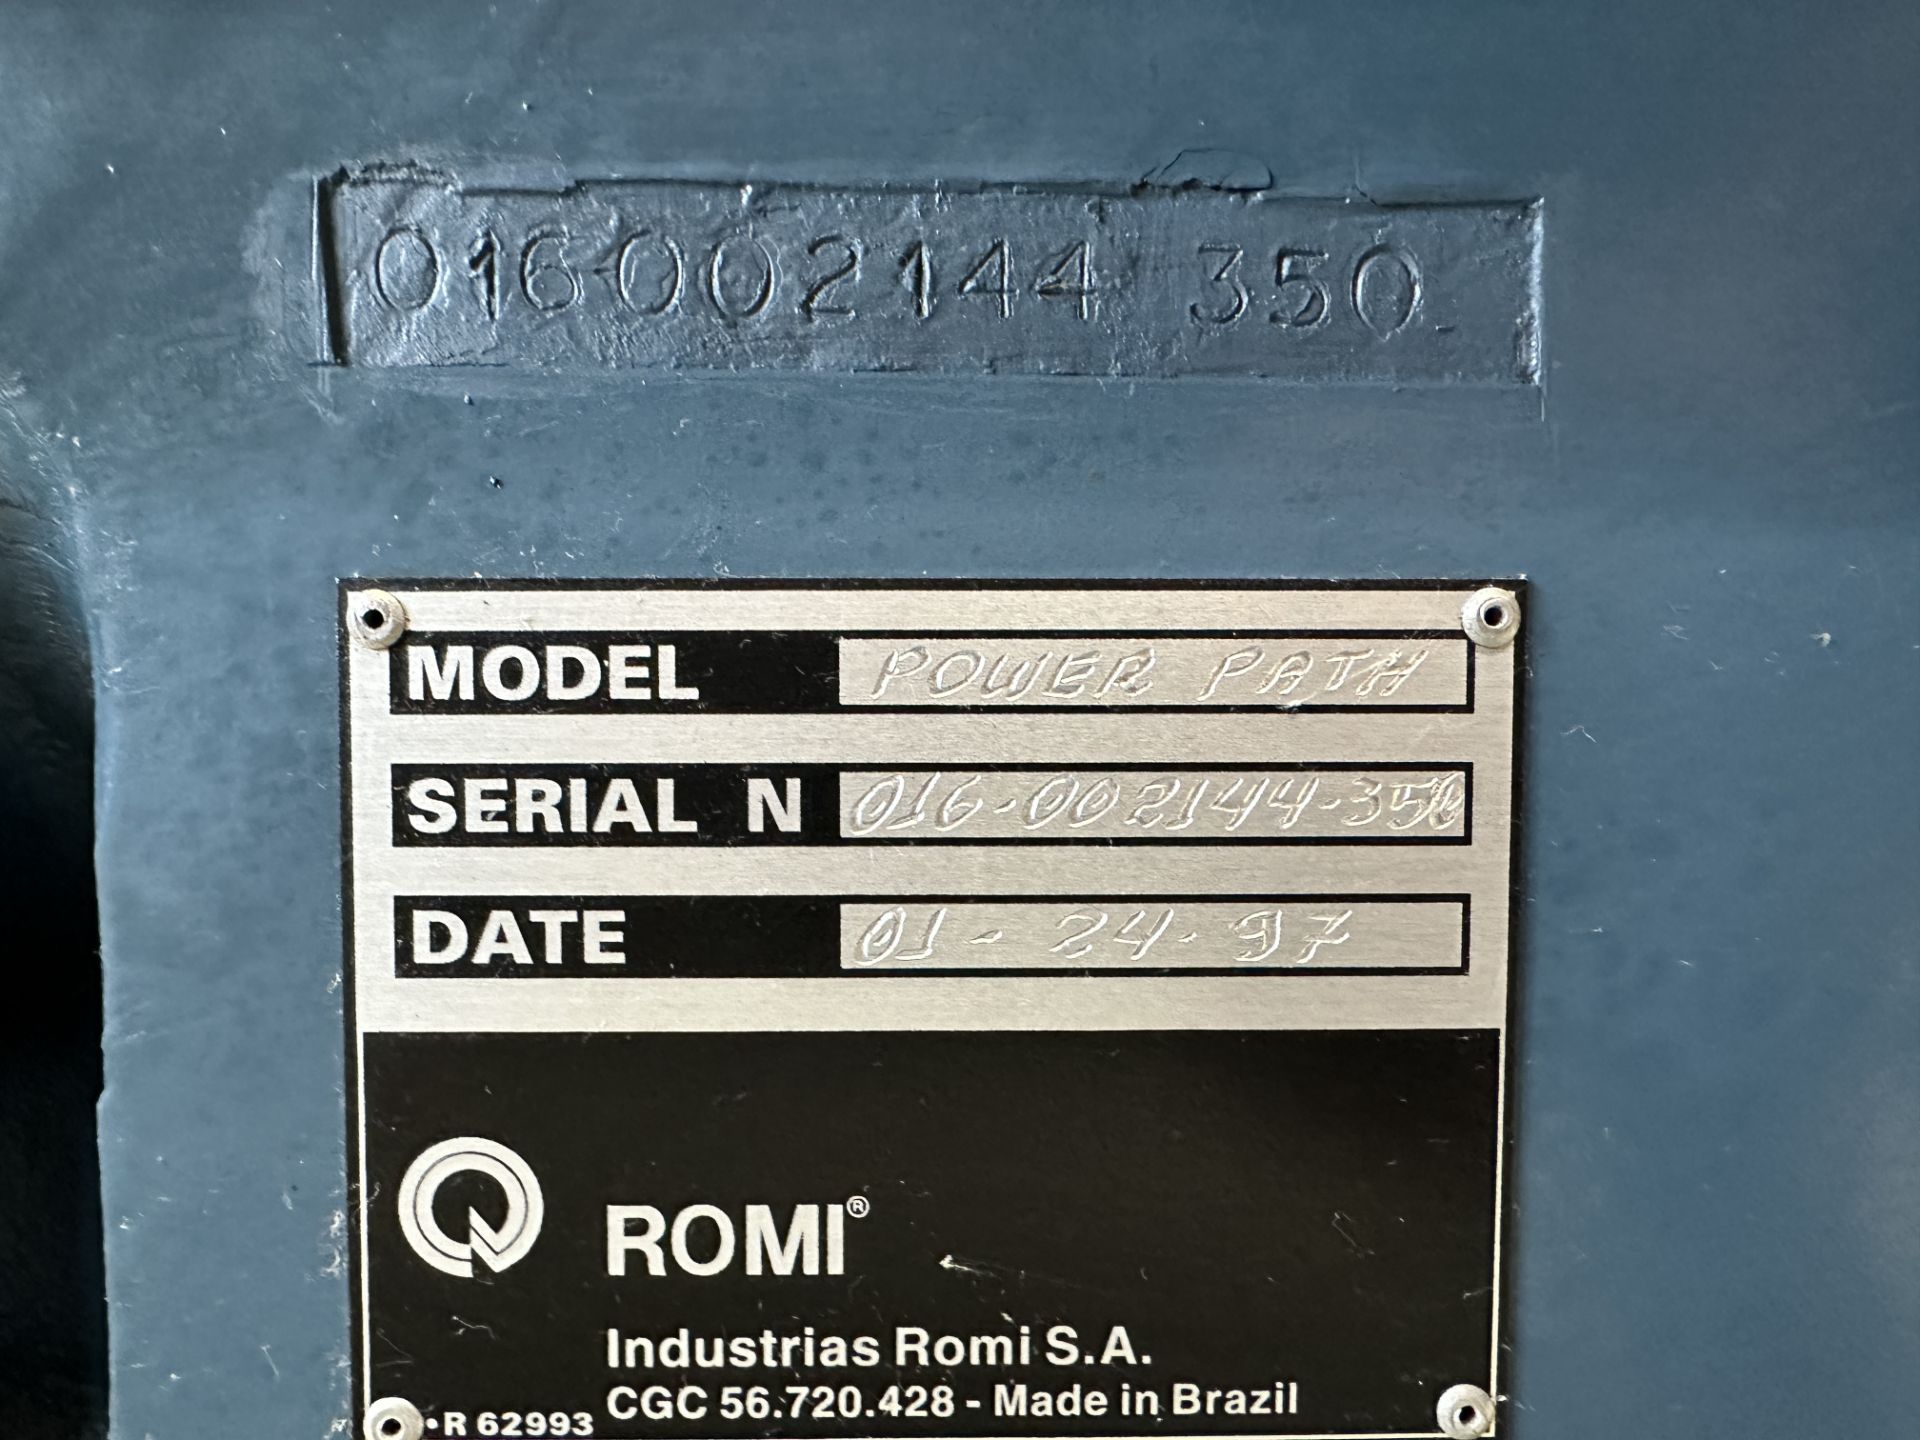 Romi Bridgeport Power Path CNC Lathe s/n 016-0021144-350, Bridgeport DX-32 CNC Control - Image 7 of 8